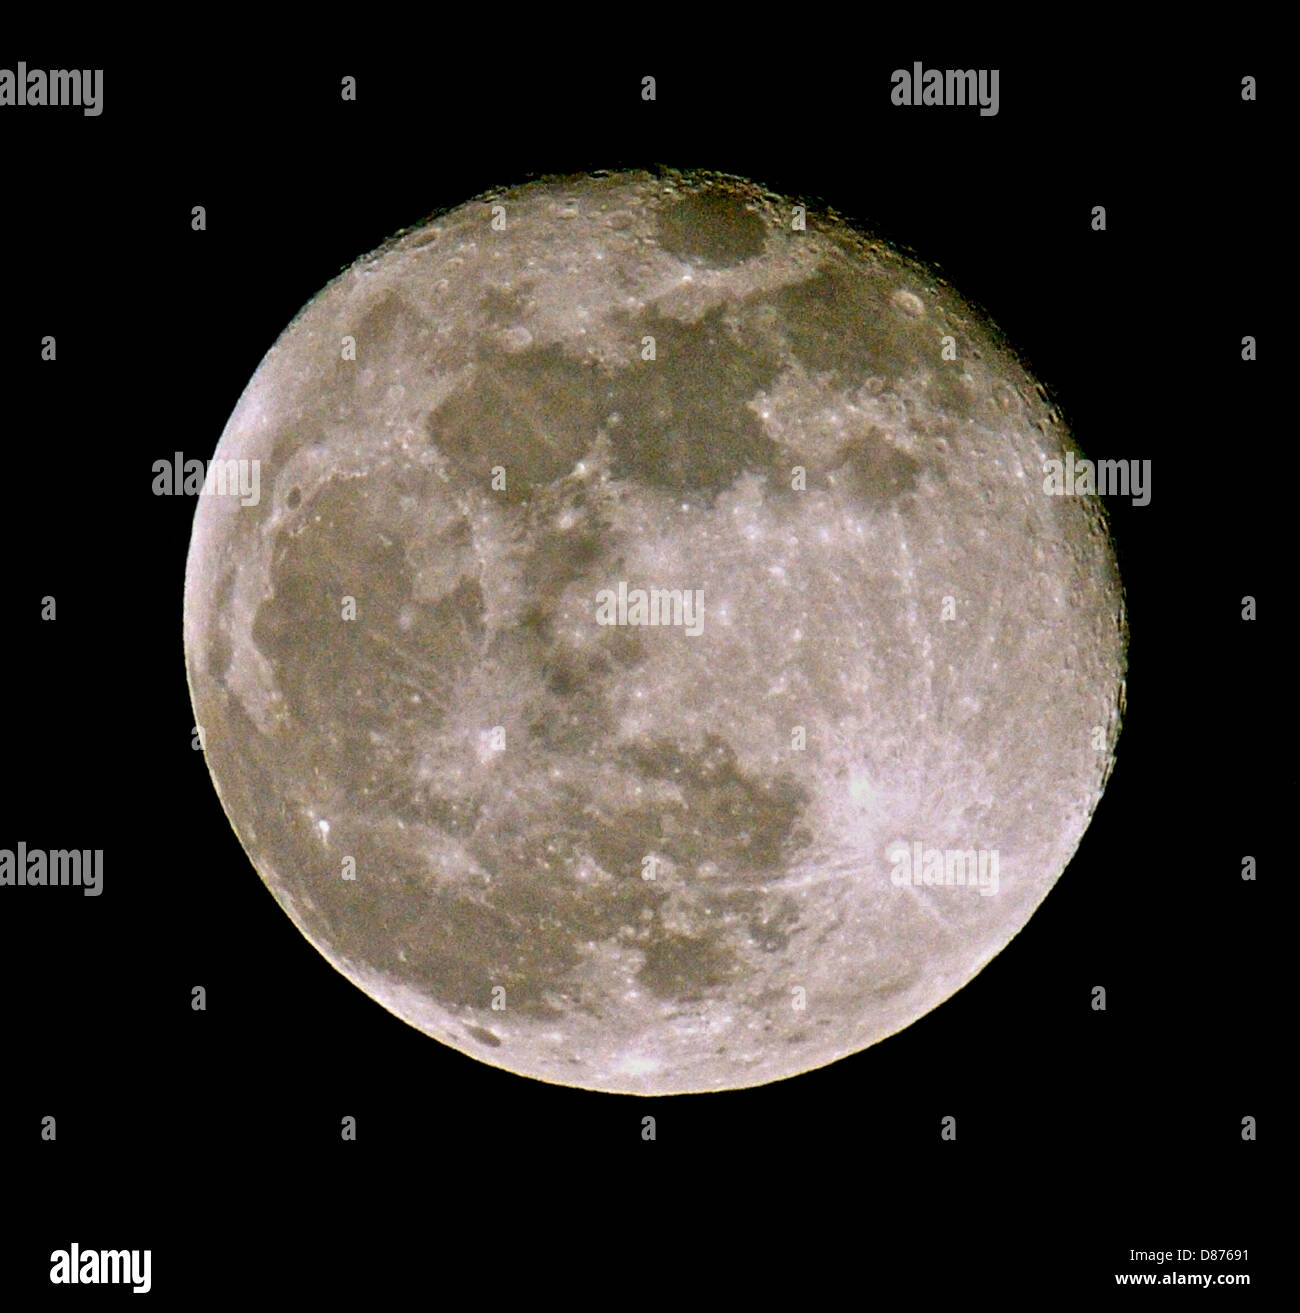 Der Mond, Satellit der Erde. Dies ist ein Vollmond fotografiert in der Mitte Frühling im südlichen Teil von Großbritannien kurz nach Vollmond-Bühne, Detail auf der Felge zu zeigen. Stockfoto